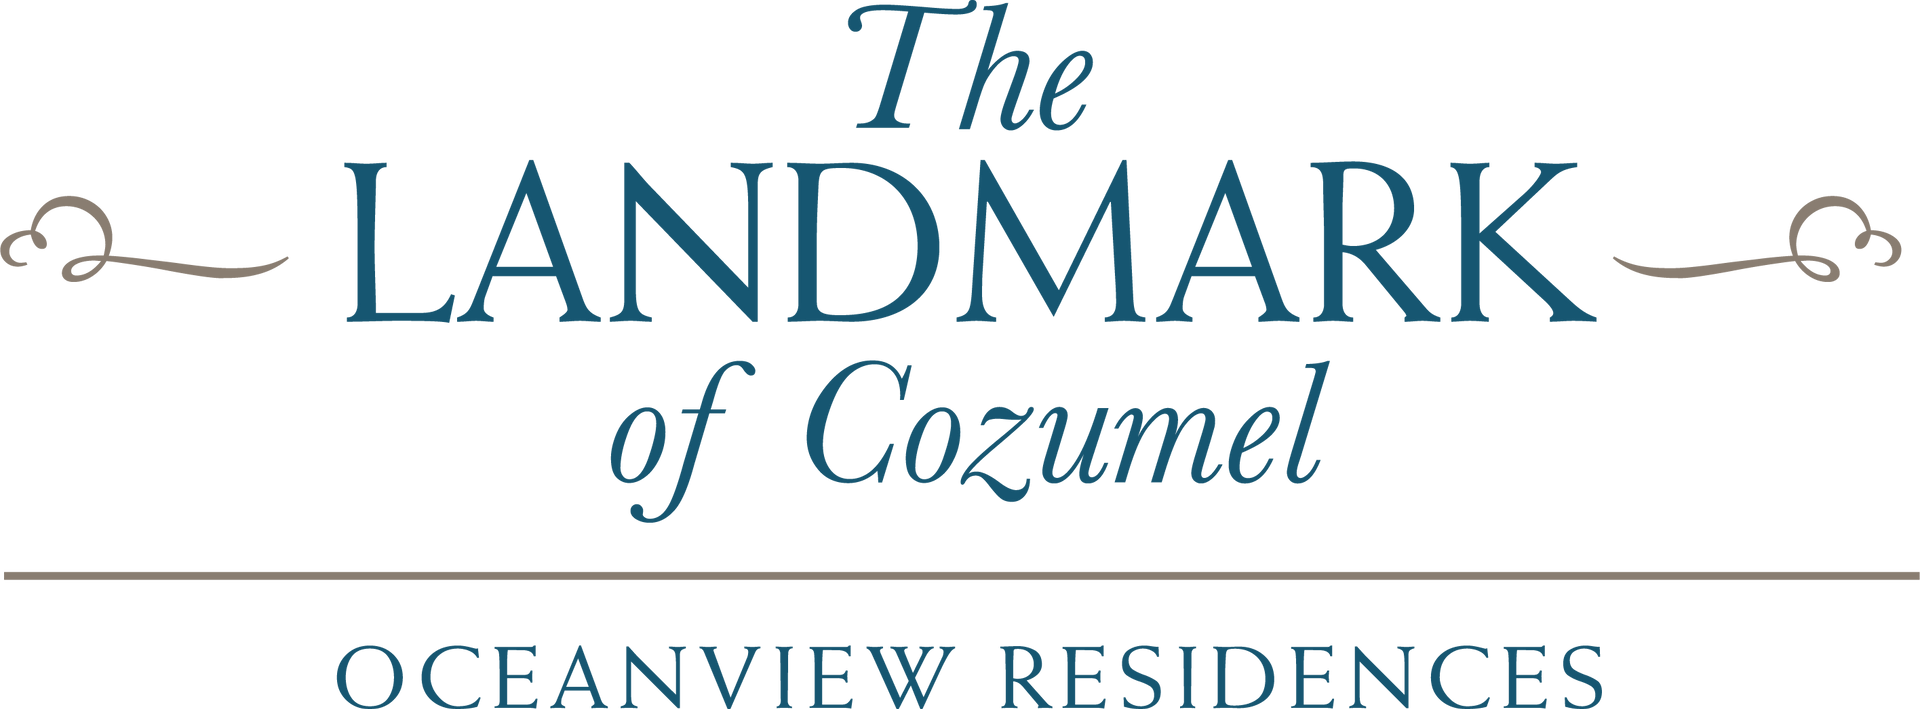 The Landmark of Cozumel